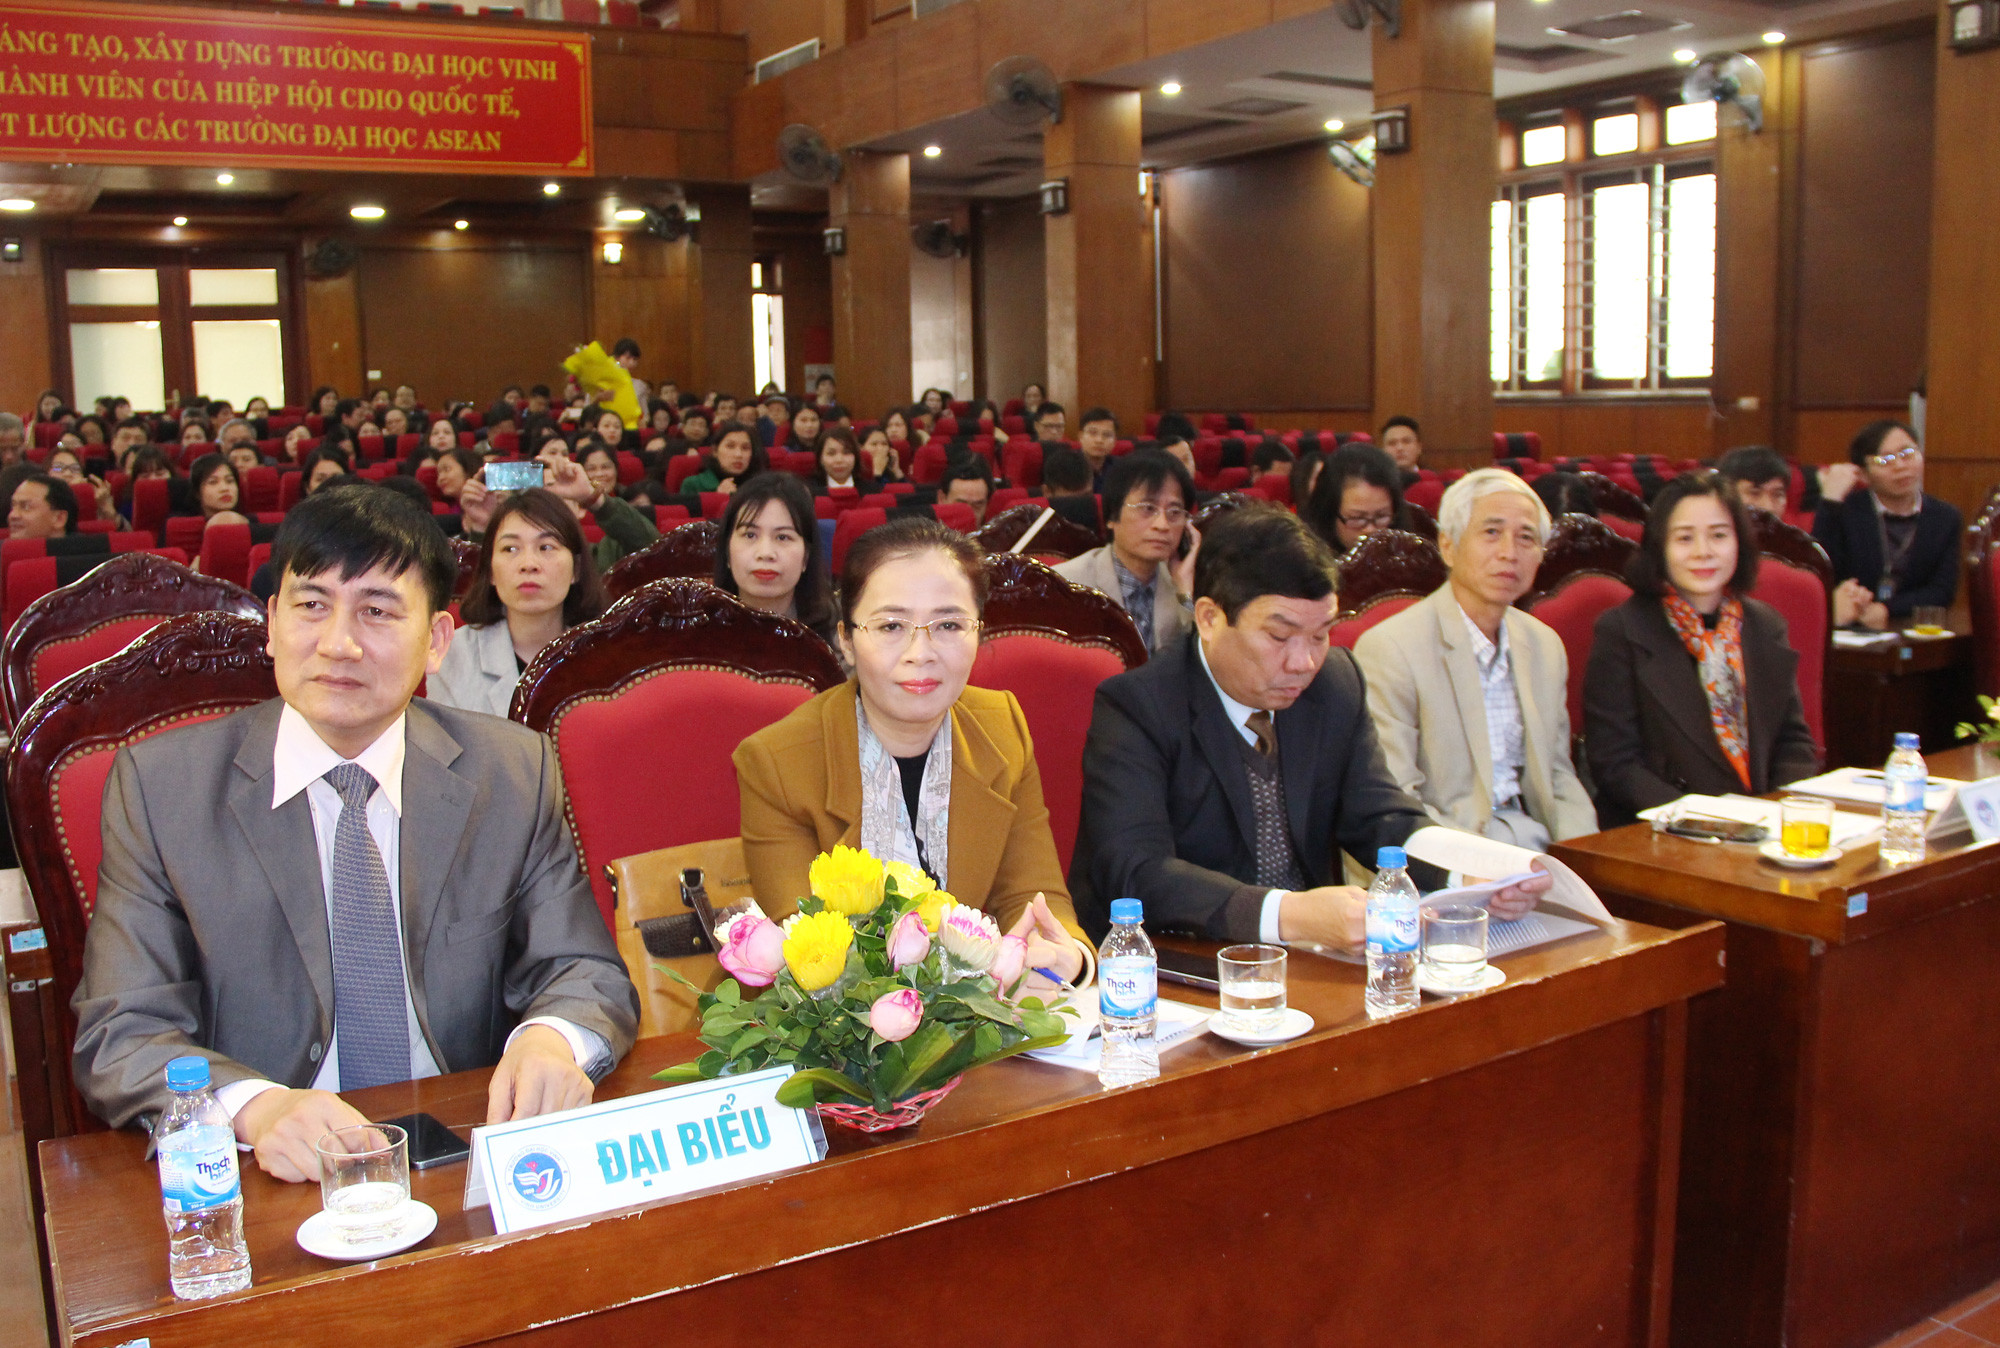 Các đại biểu tham dự lễ công bố và trao Quyết định bổ nhiệm Phó Hiệu trưởng Nguyễn Ngọc Hiền. Ảnh: Mai Hoa